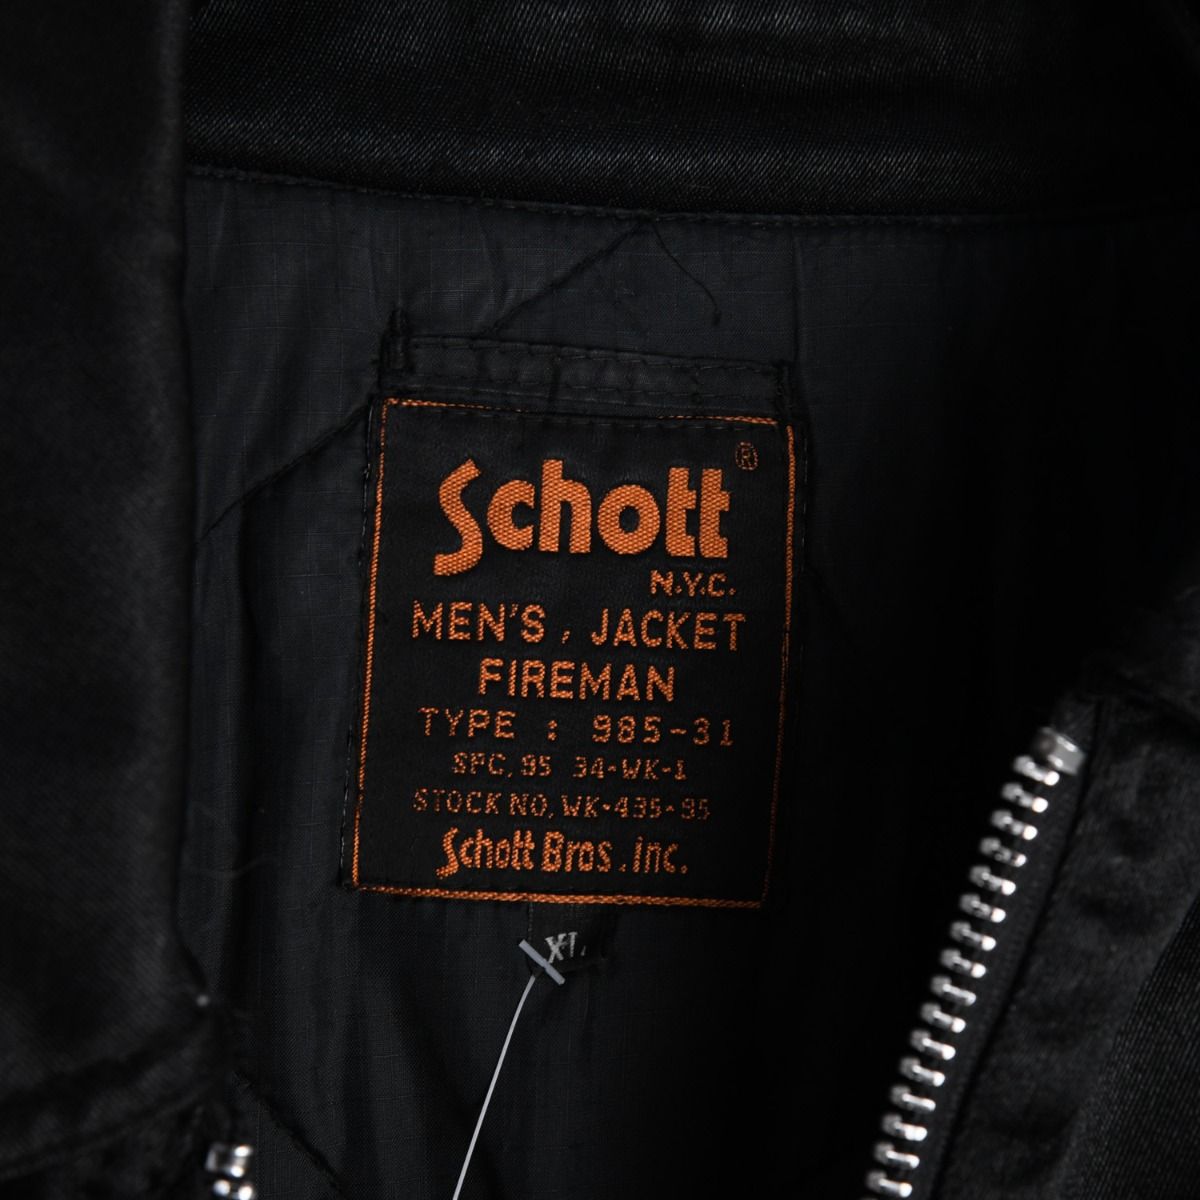 Schott 1980s Fireman Jacket